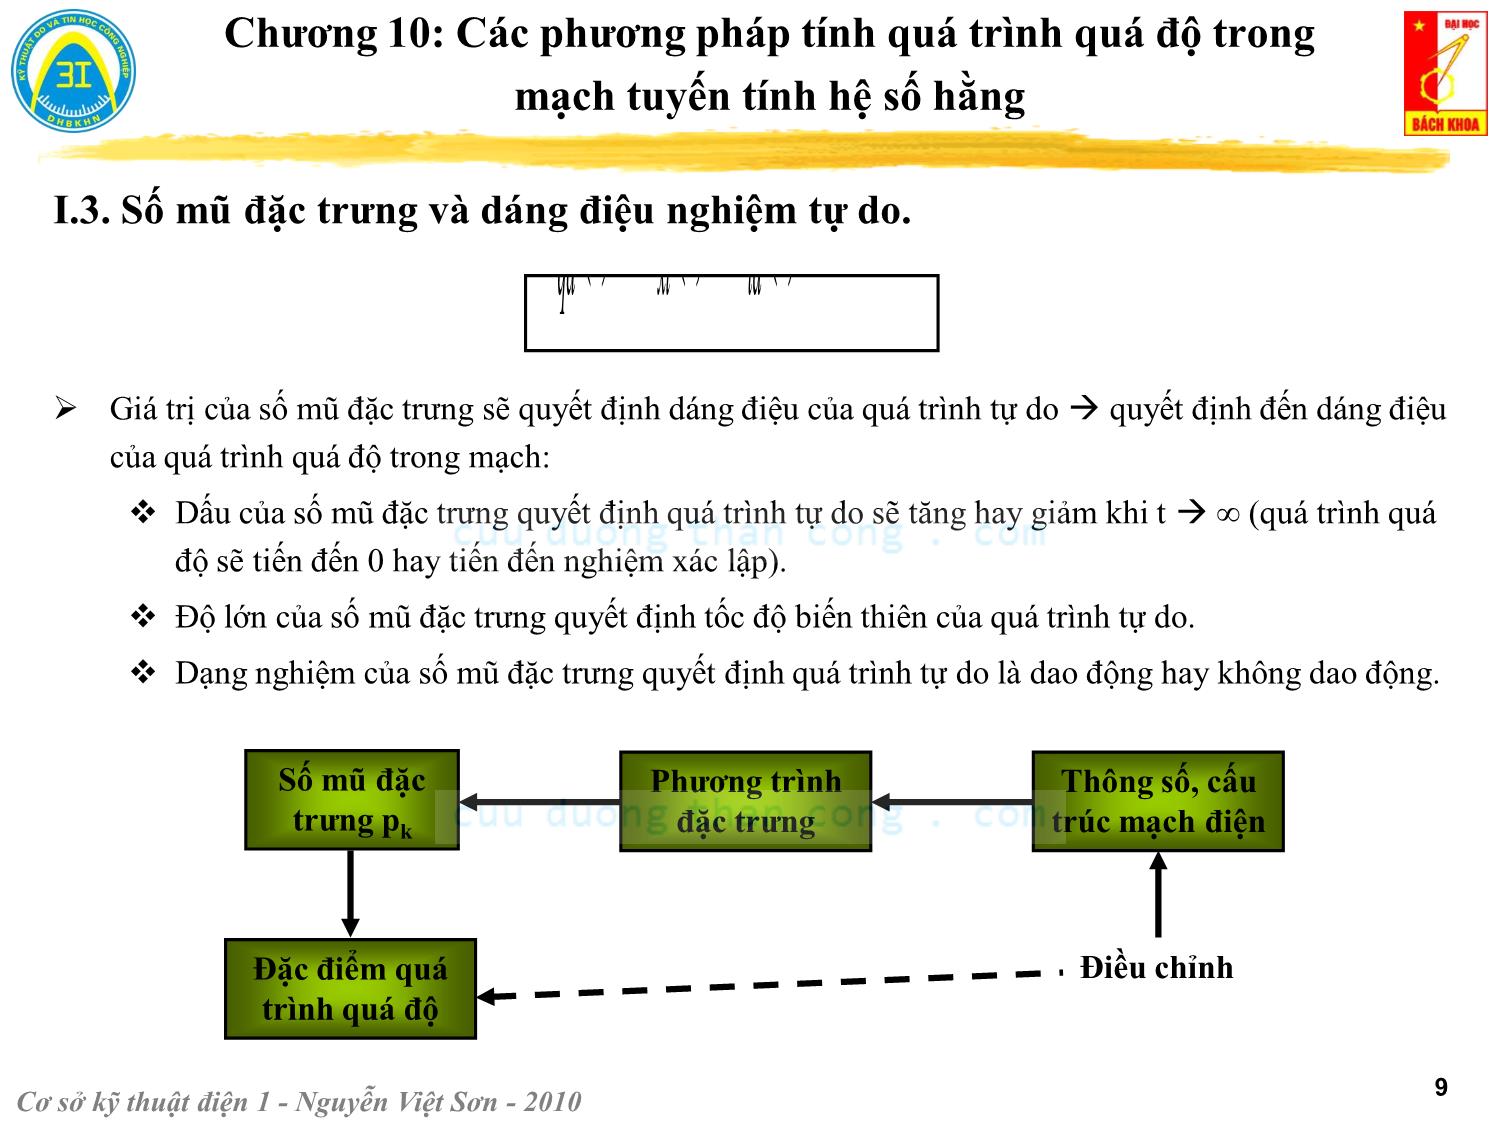 Bài giảng Kỹ thuật điện 1 - Chương 10: Các phương pháp tính quá trình quá độ trong mạch điện tuyến tính - Nguyễn Việt Sơn trang 9